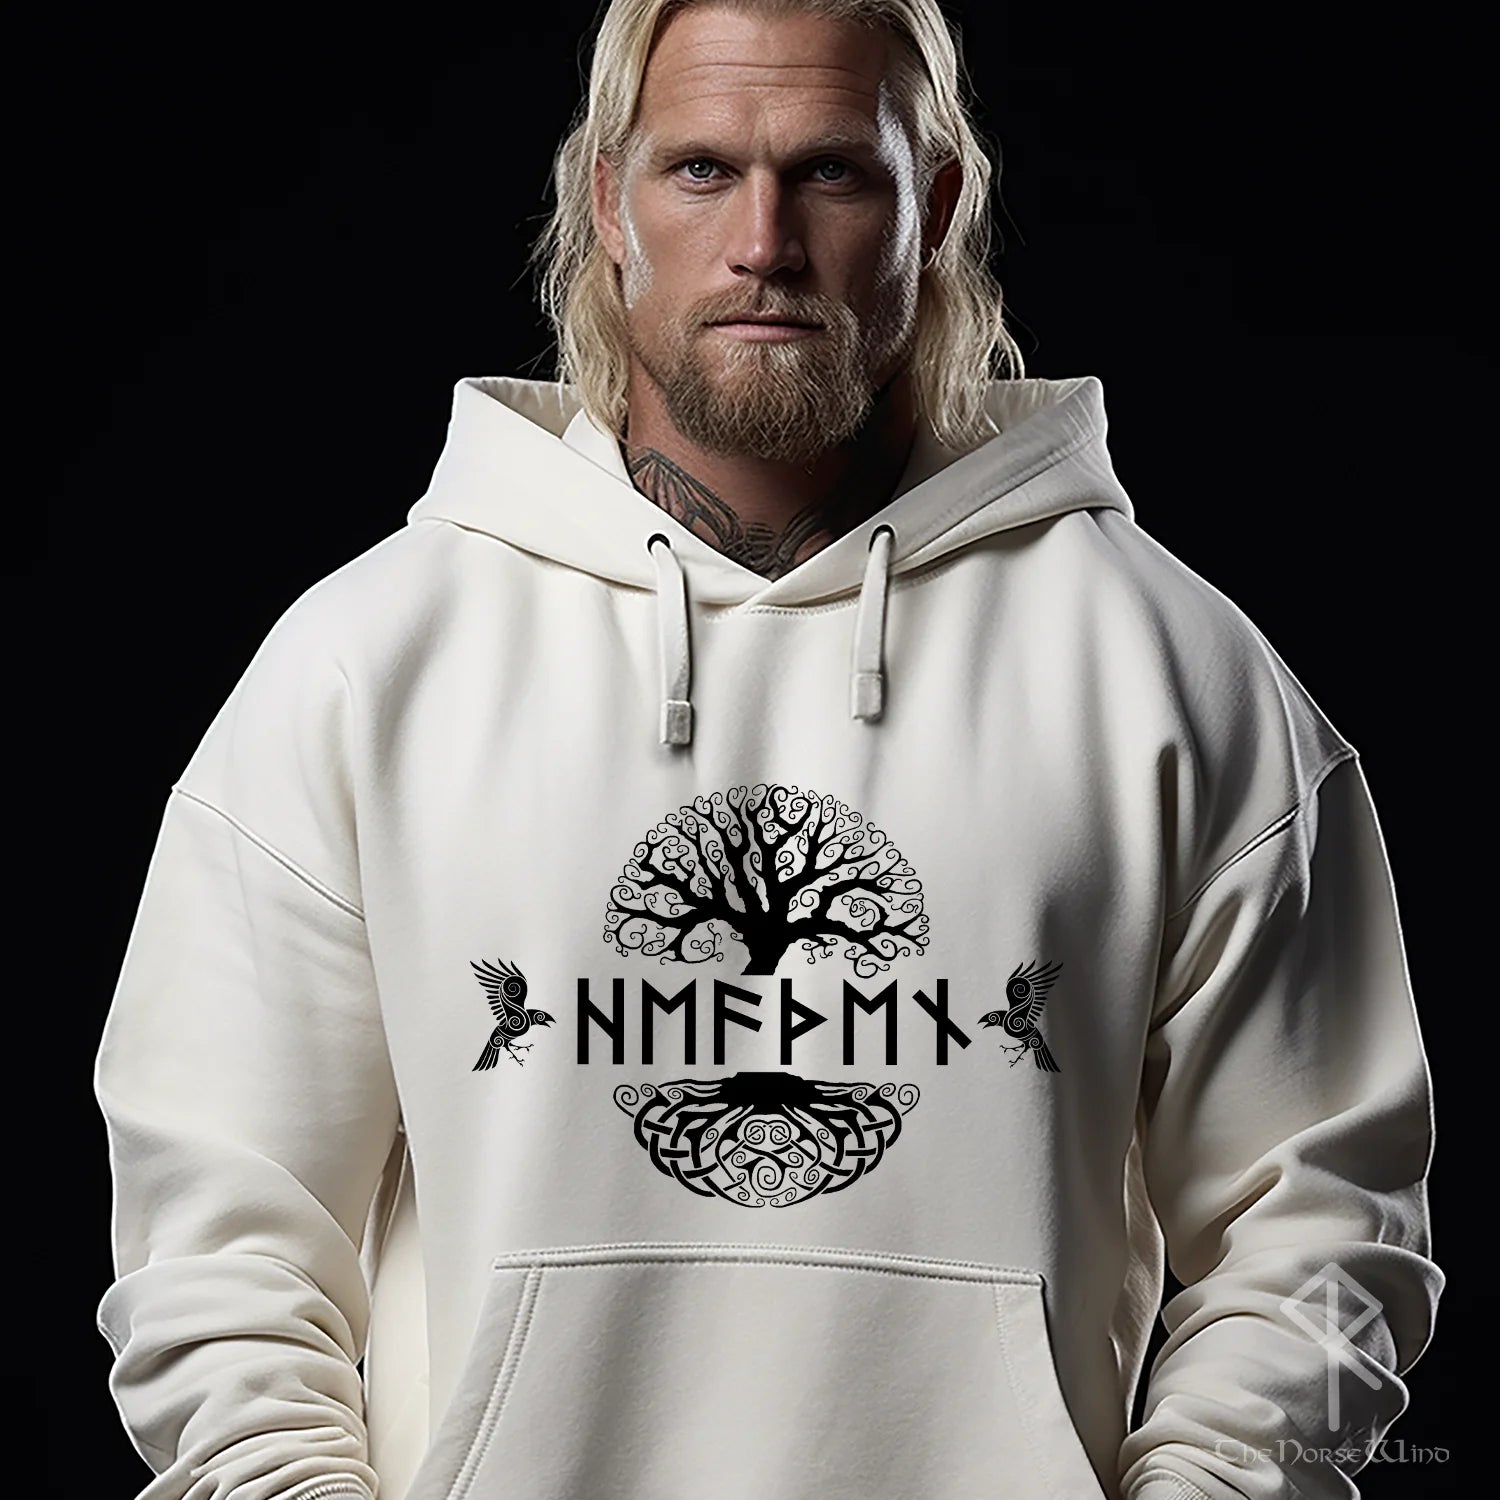 Personalized Viking Hoodie, Name in Runes Norse Sweatshirt - TheNorseWind